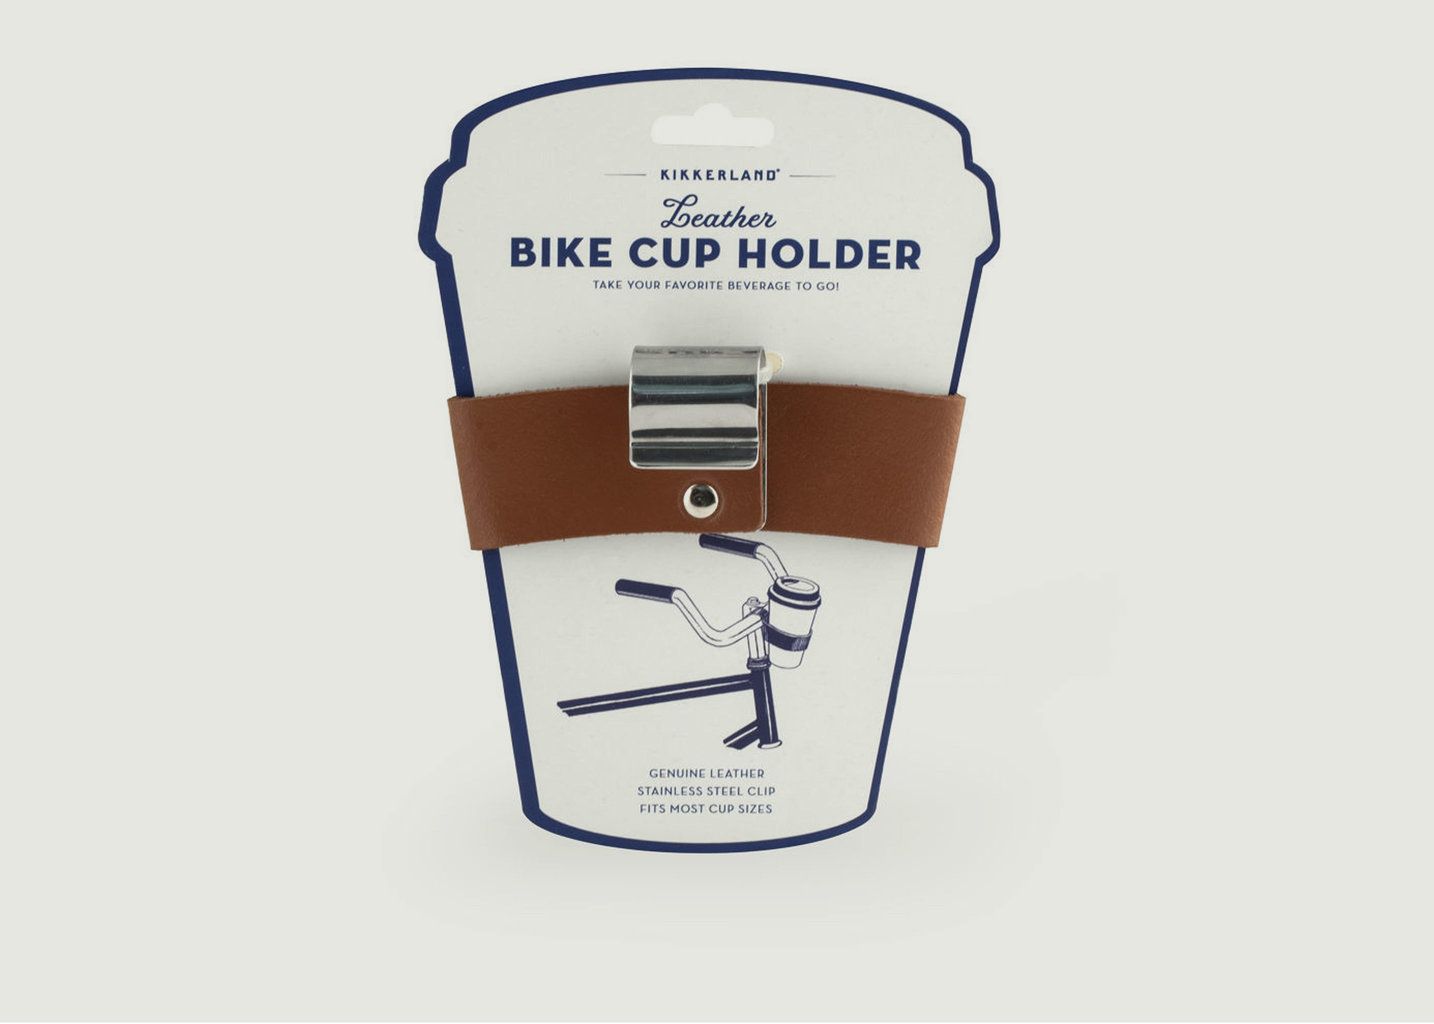 Bike Cup Holder - Kikkerland